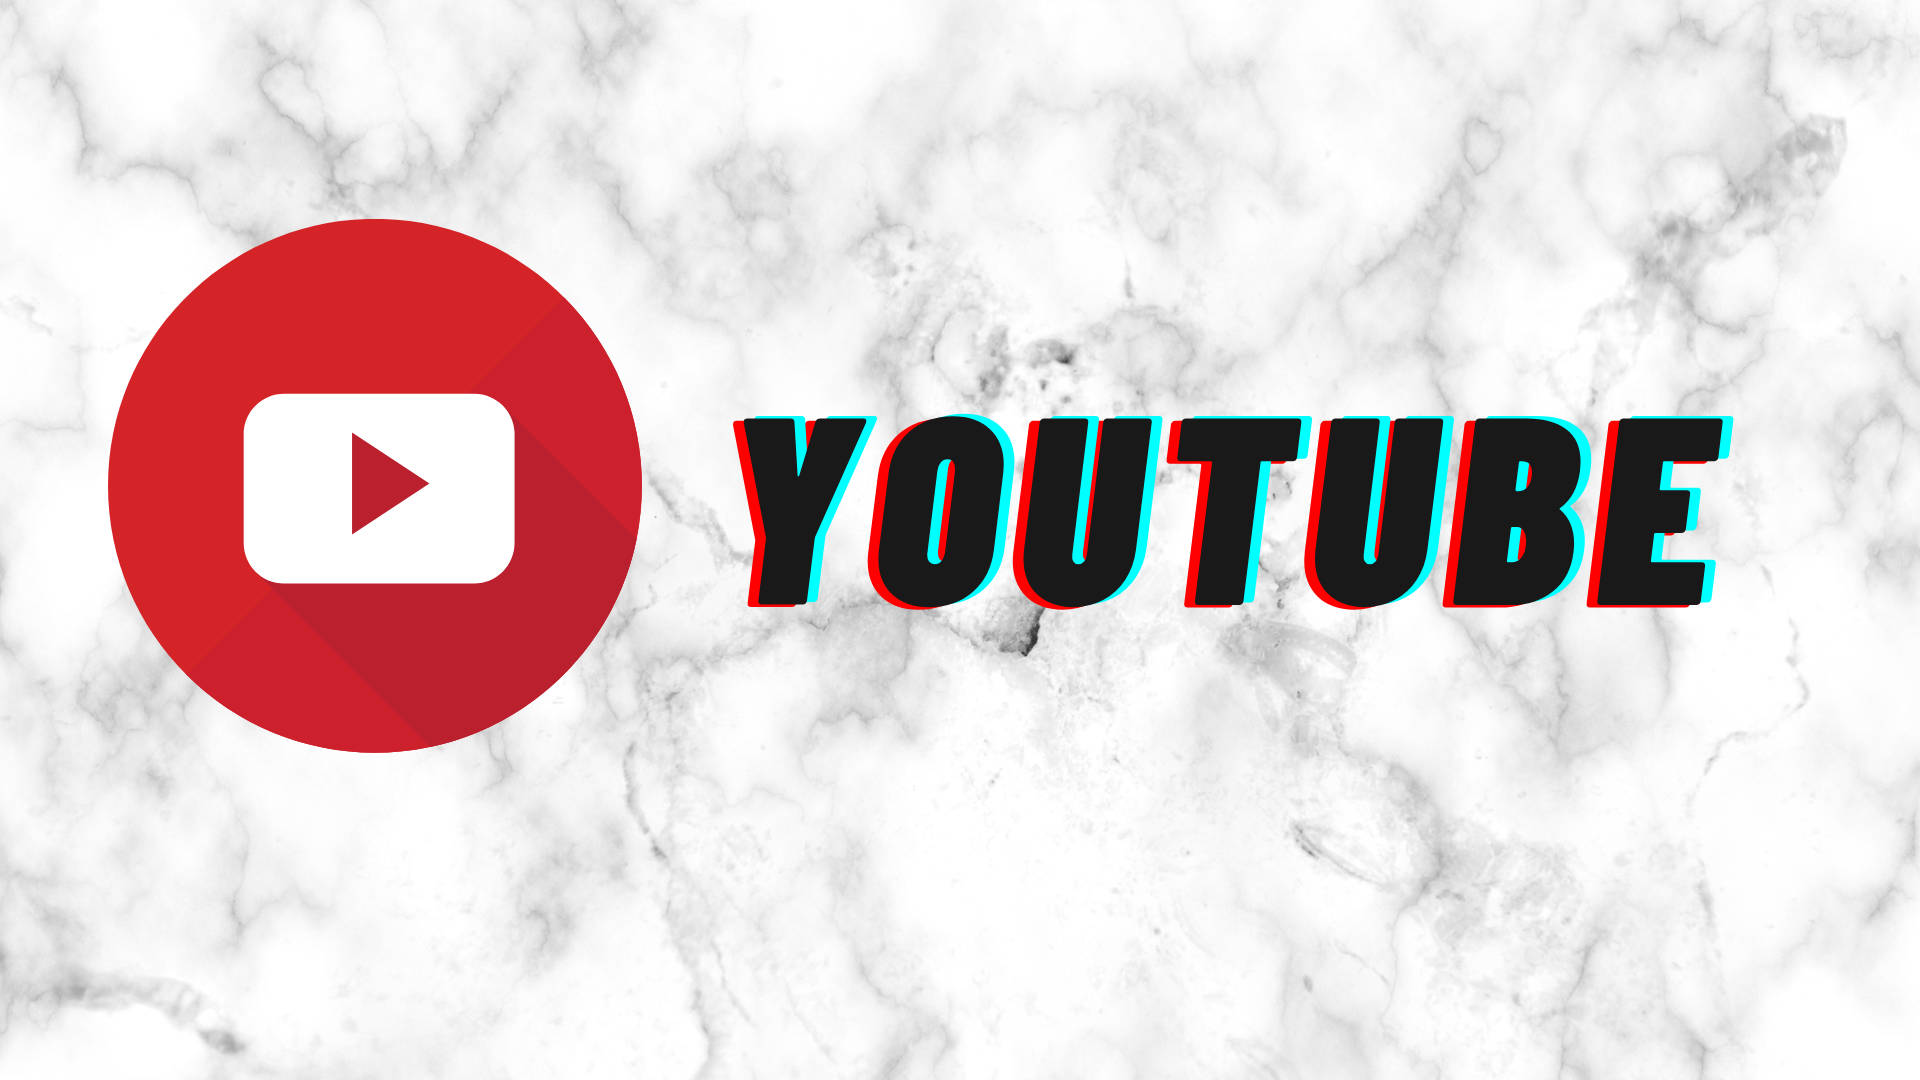 Youtube Logo On White Marble Stone Background